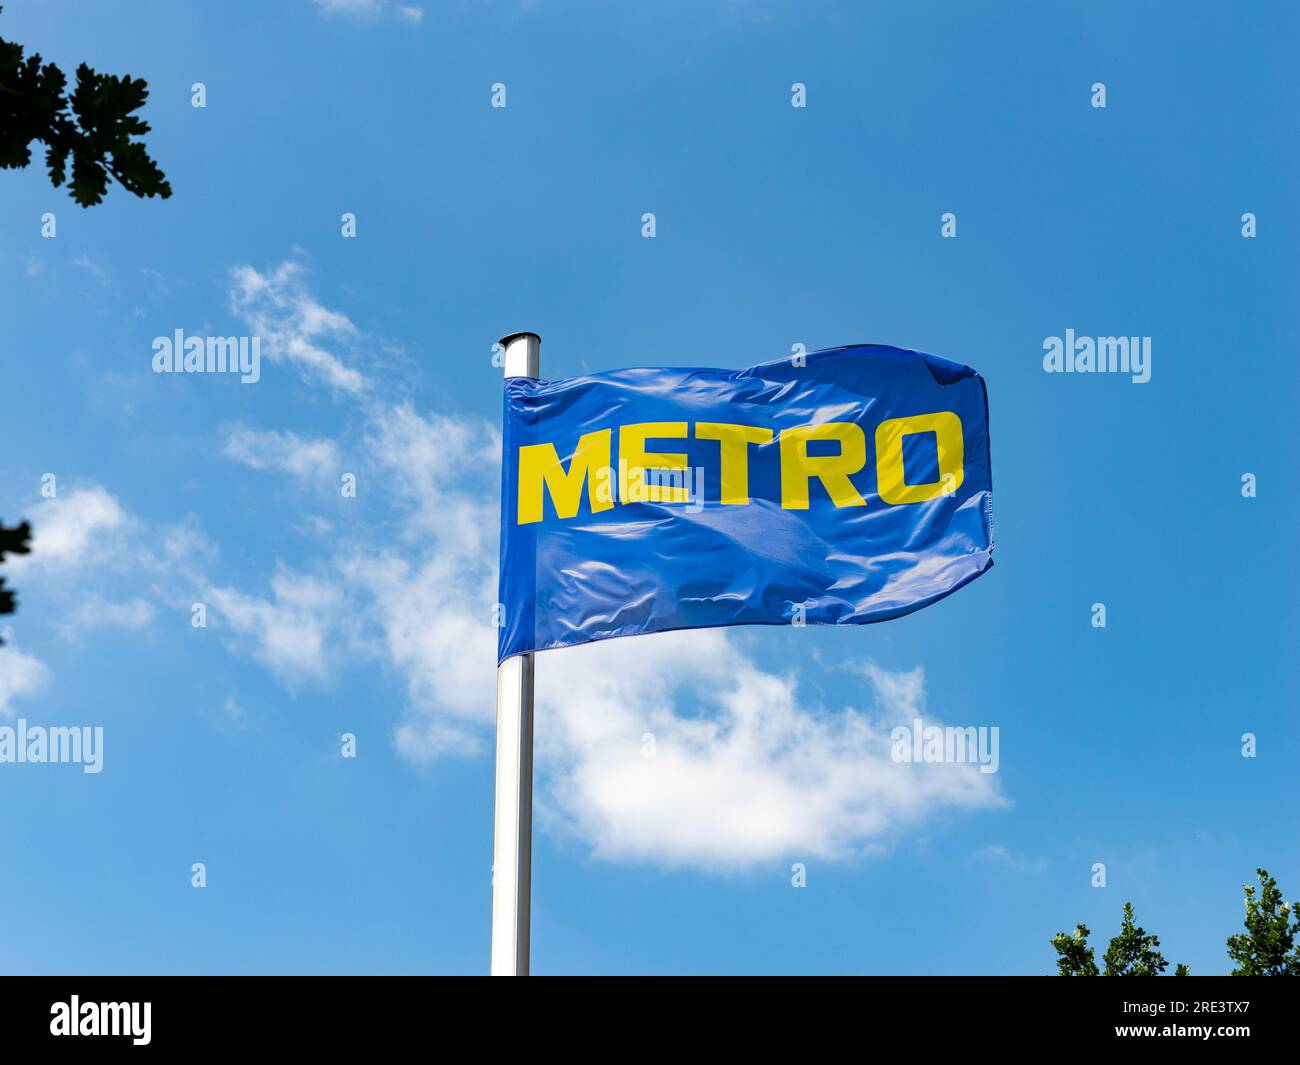 Logo des Großhändlers Metro auf einer Flagge hoch oben in der Luft. Der Cash and Carry Store bietet Geschäftsmitgliedern Produkte in einem B2B-Kontext an. Stockfoto